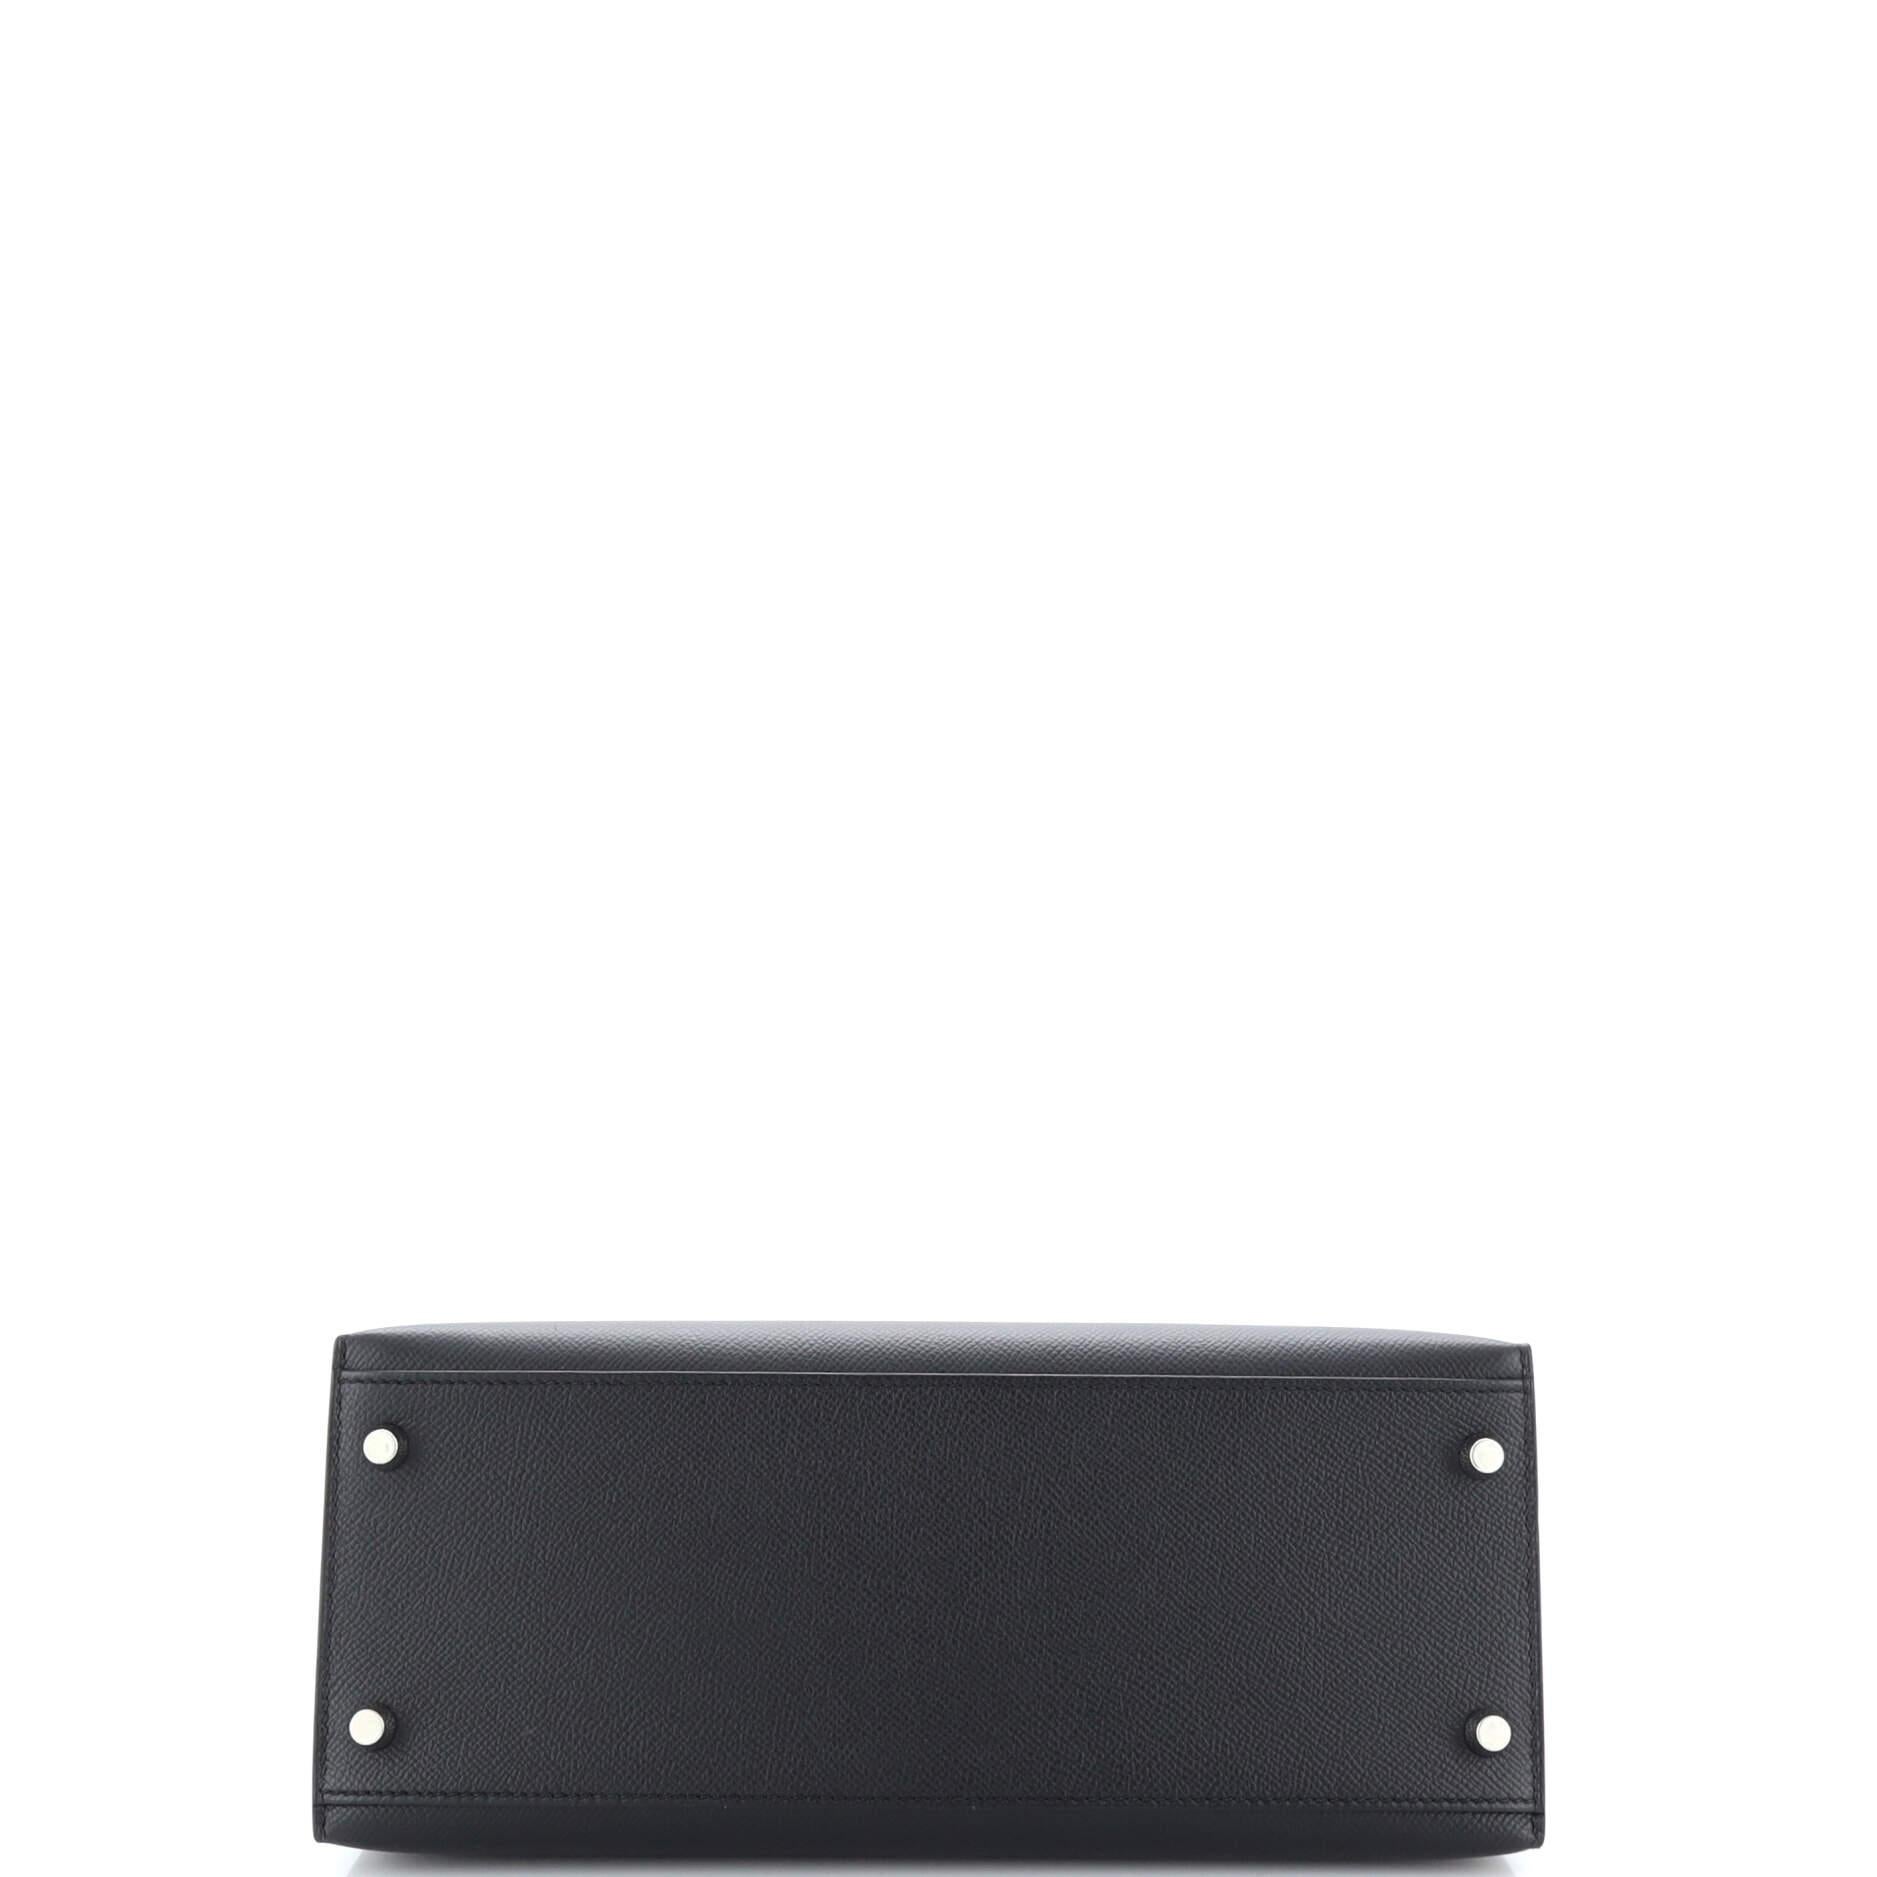 Women's or Men's Hermes Kelly Handbag Noir Epsom with Palladium Hardware 28